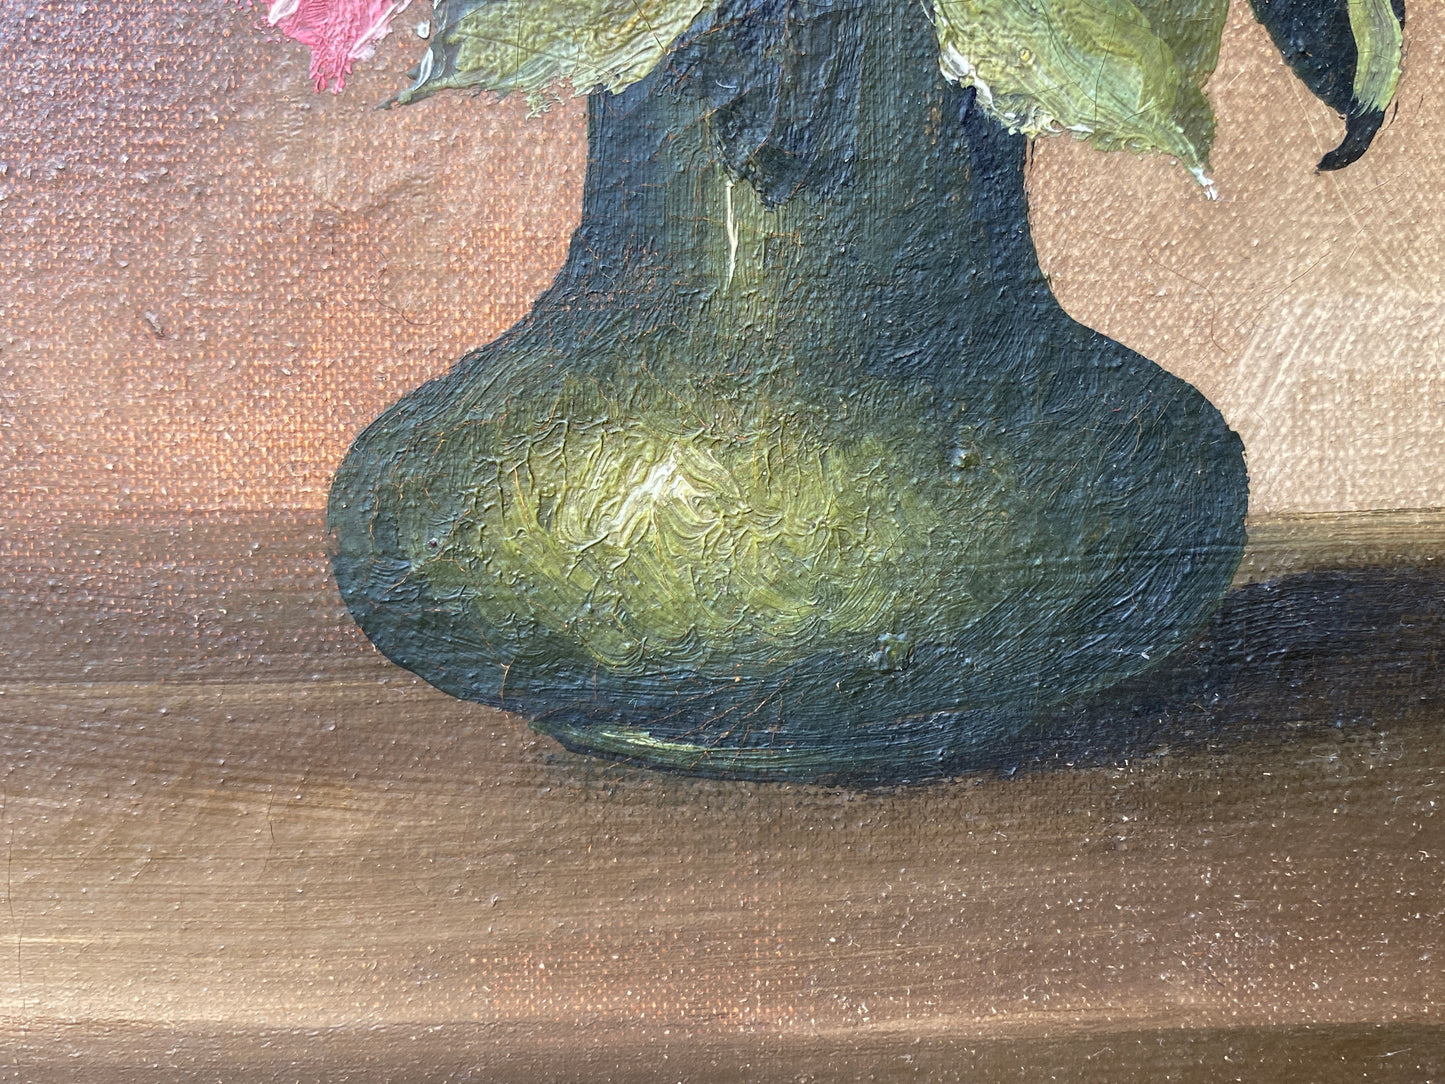 A near pair Framed Danish Art Oil in Canvas 'Flowers in Vases S. Thomsen c 1940s